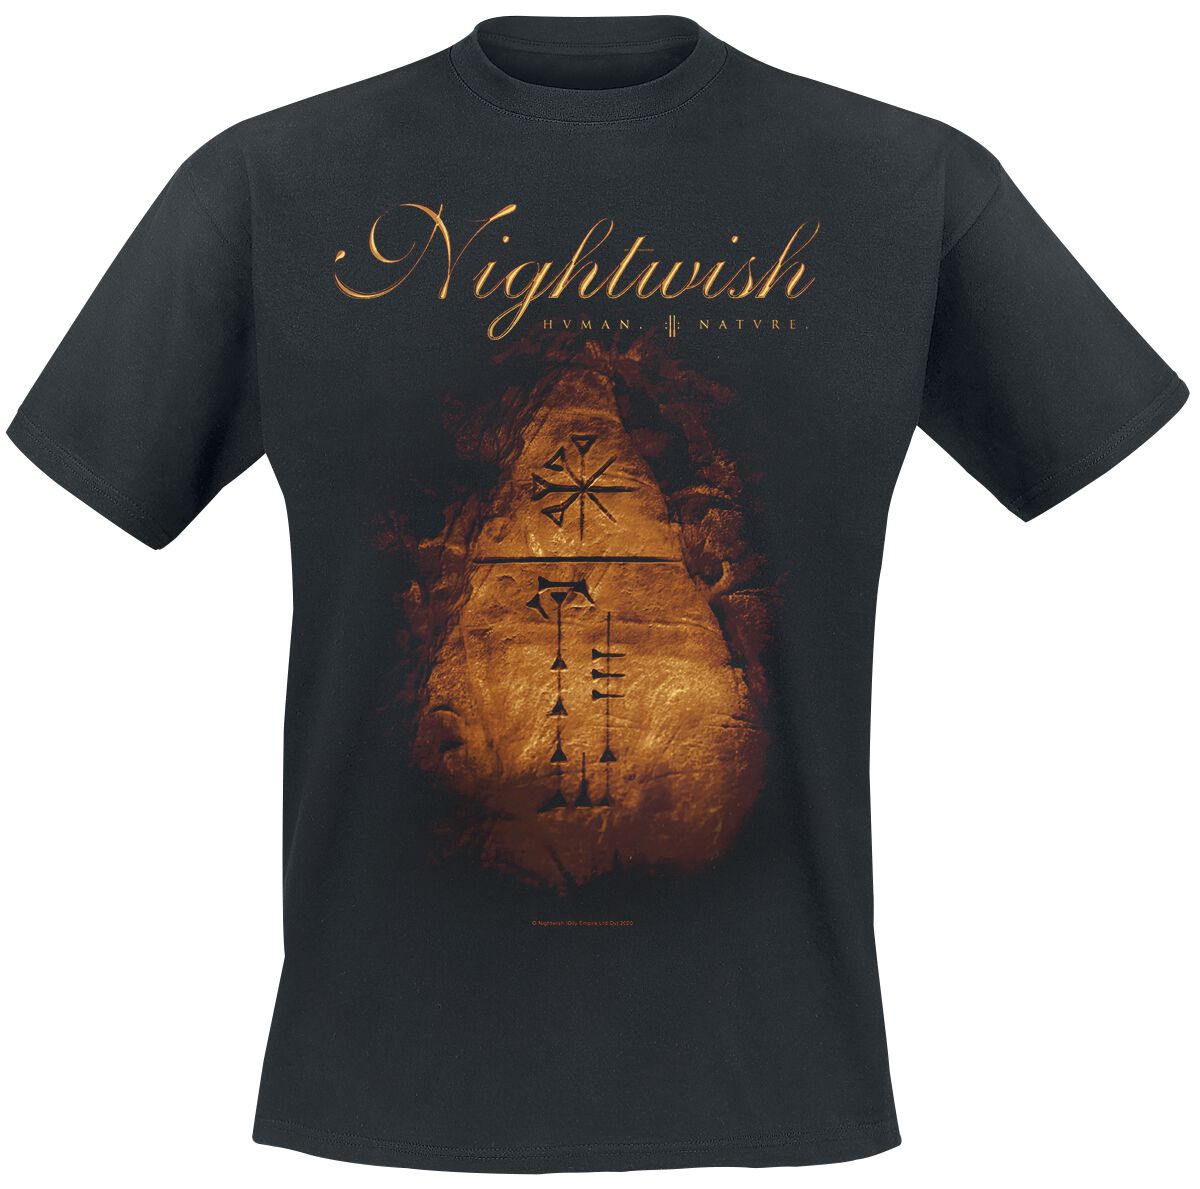 Nightwish T-Shirt - Human. :||: Nature. - S bis XXL - für Männer - Größe S - schwarz  - EMP exklusives Merchandise!